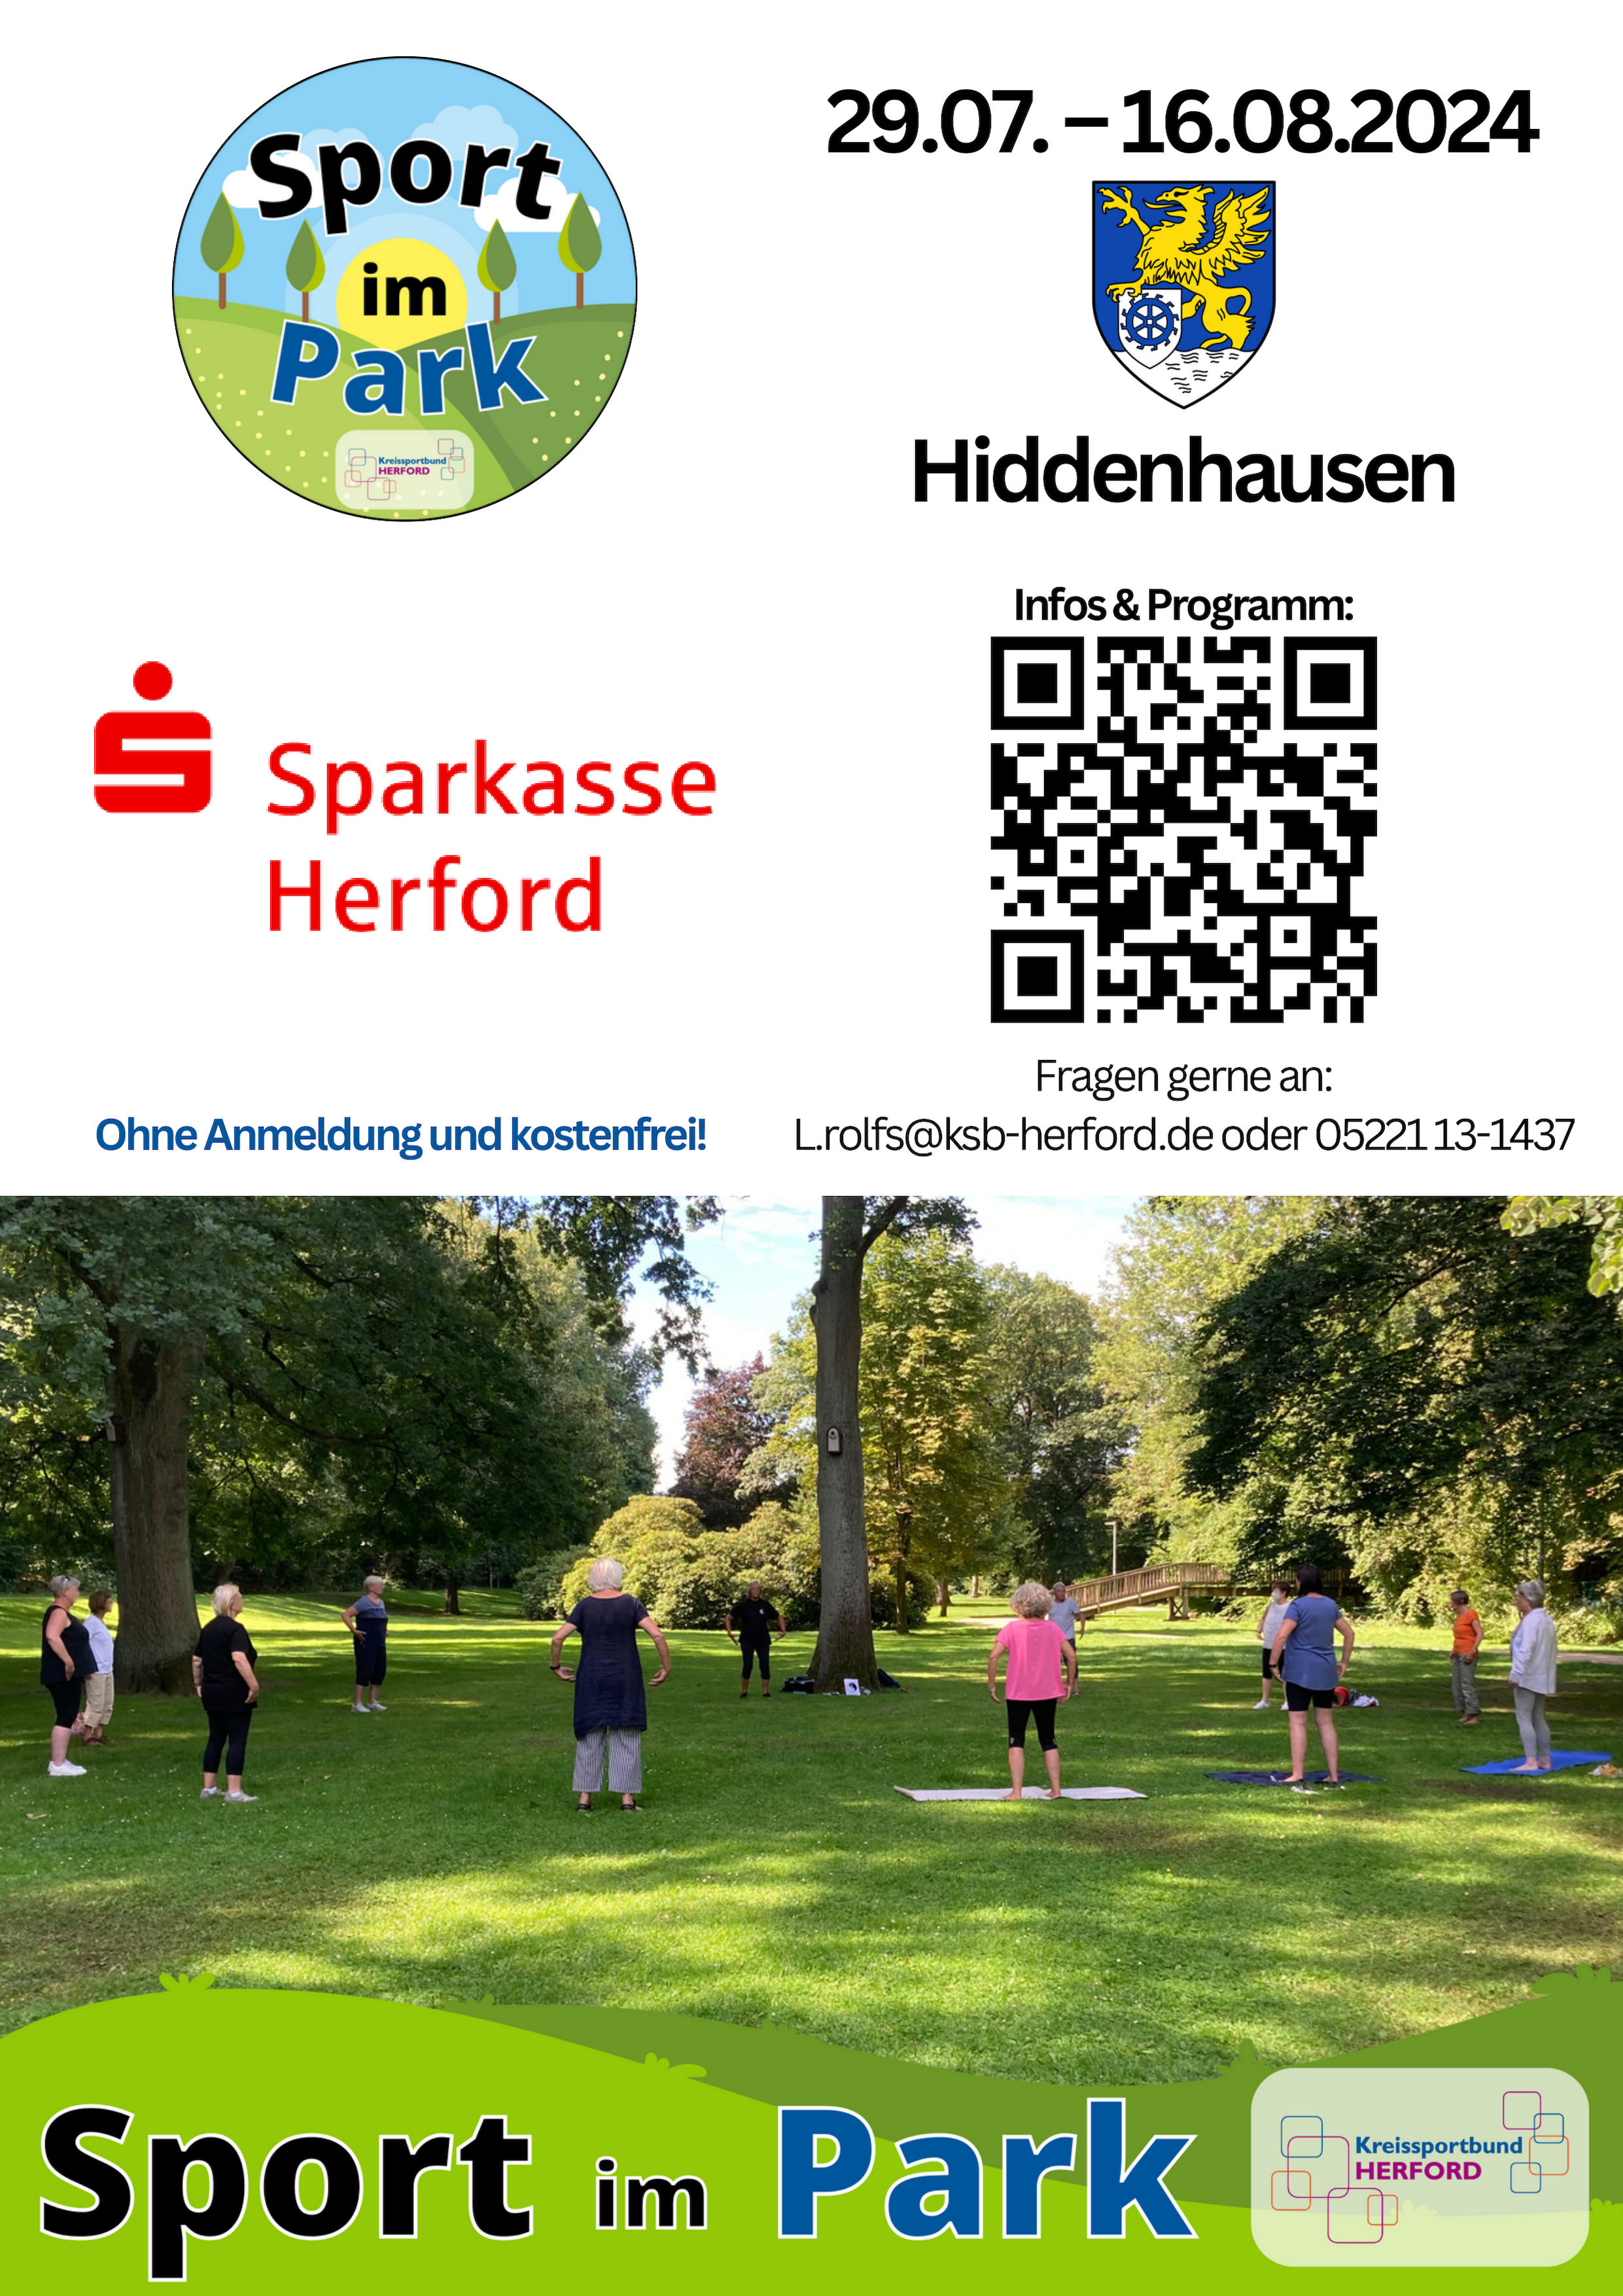 Flyer Plakat SiP 2024 Hiddenhausen